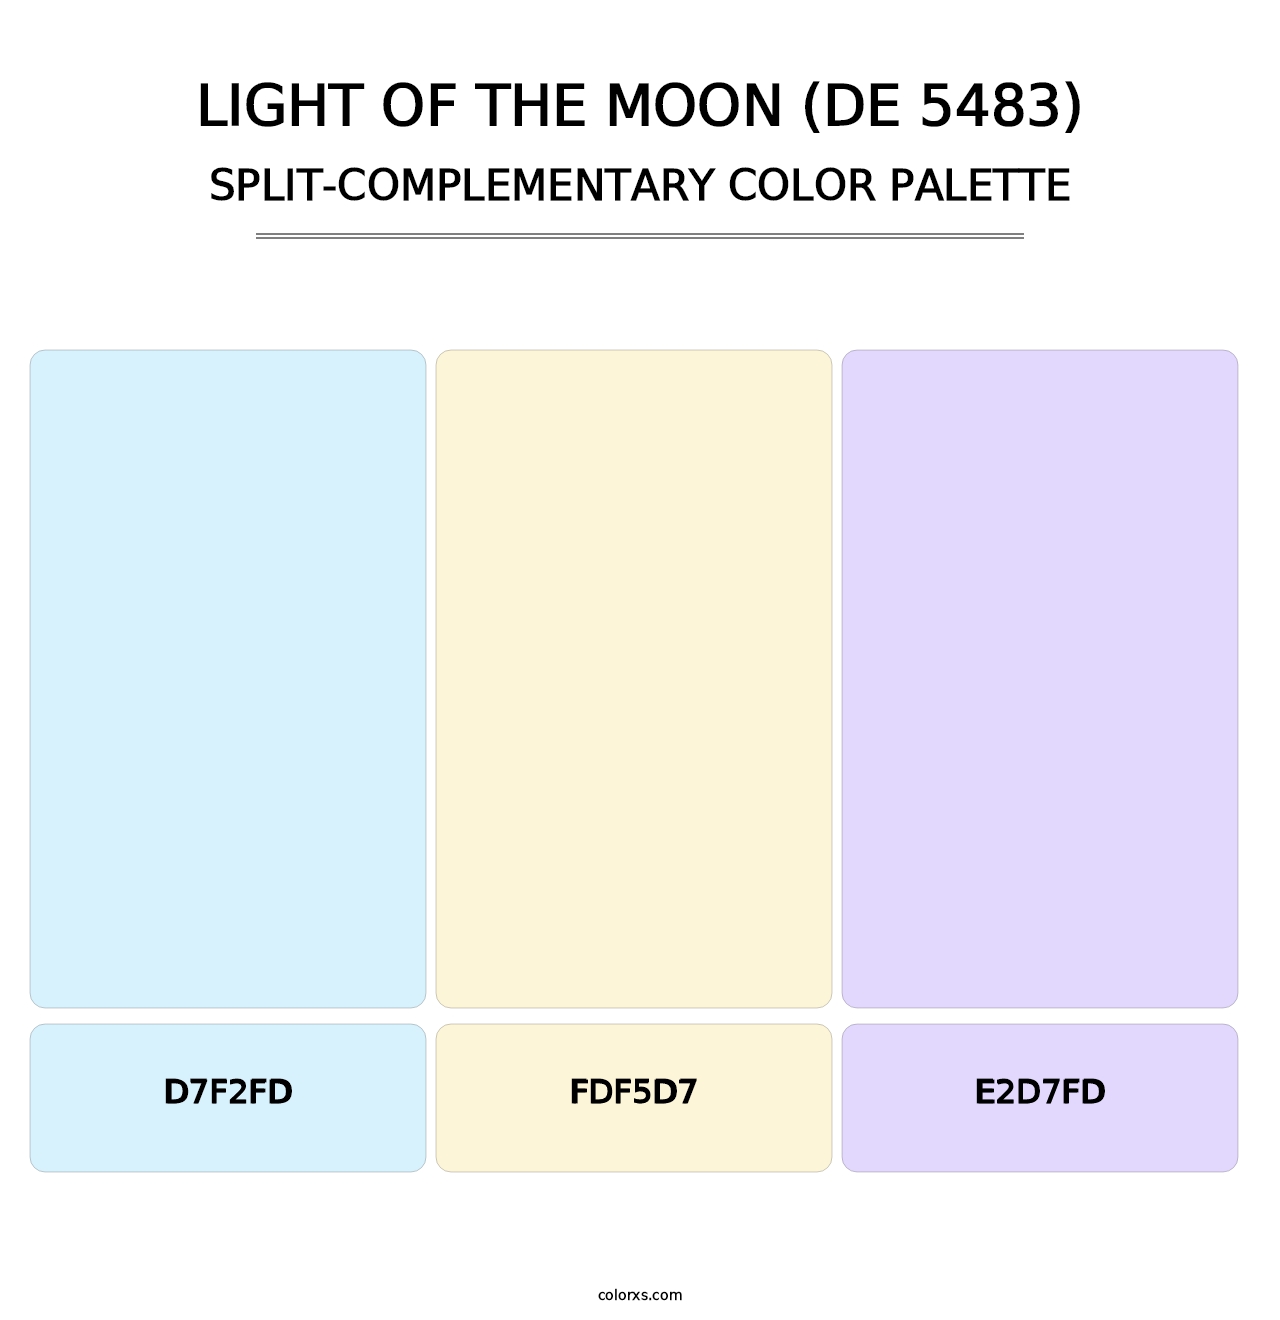 Light of the Moon (DE 5483) - Split-Complementary Color Palette